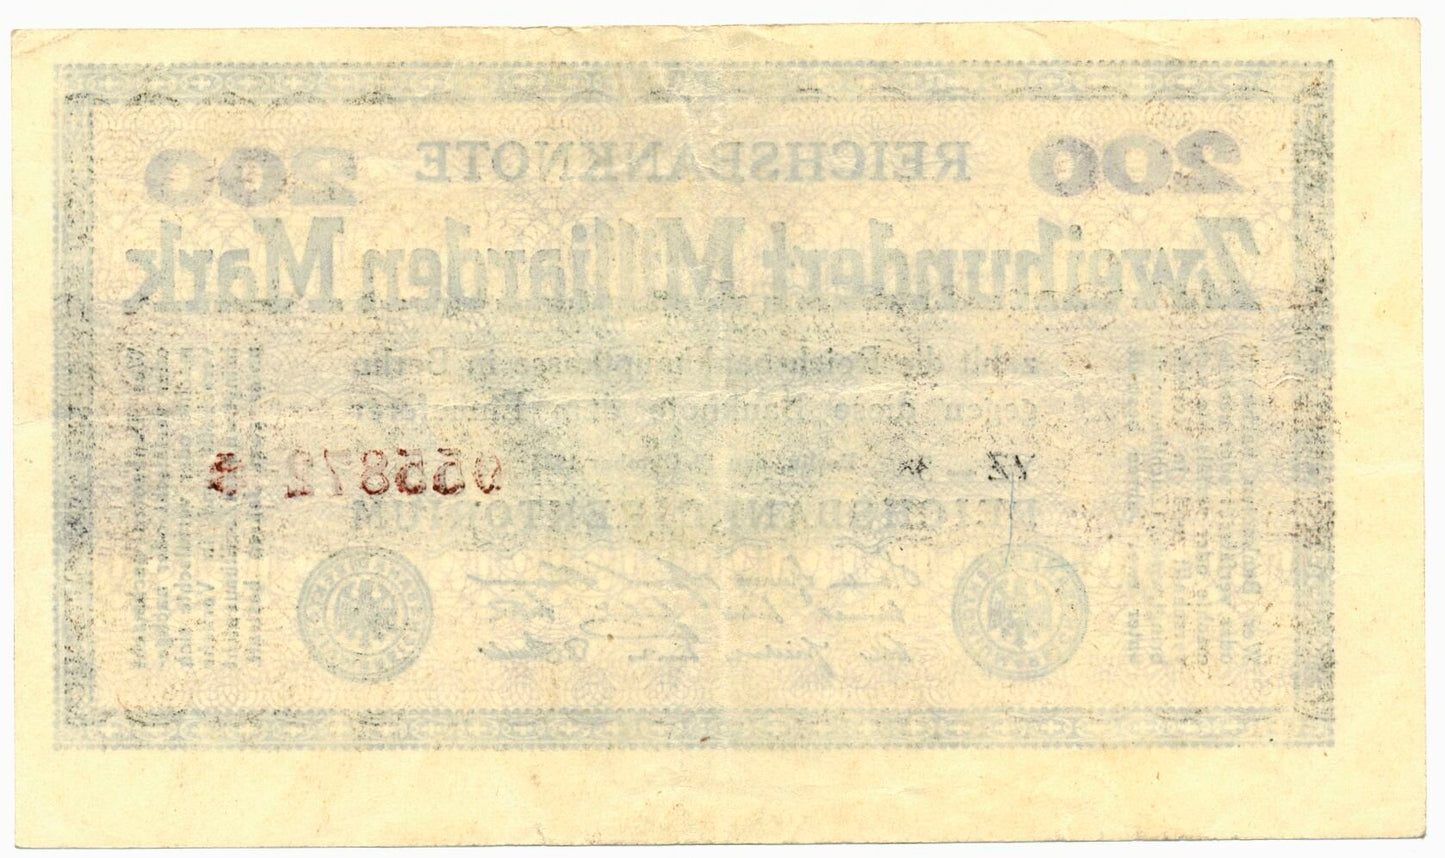 GERMANY P.121a 1923 200,000,000,000 Mark EF